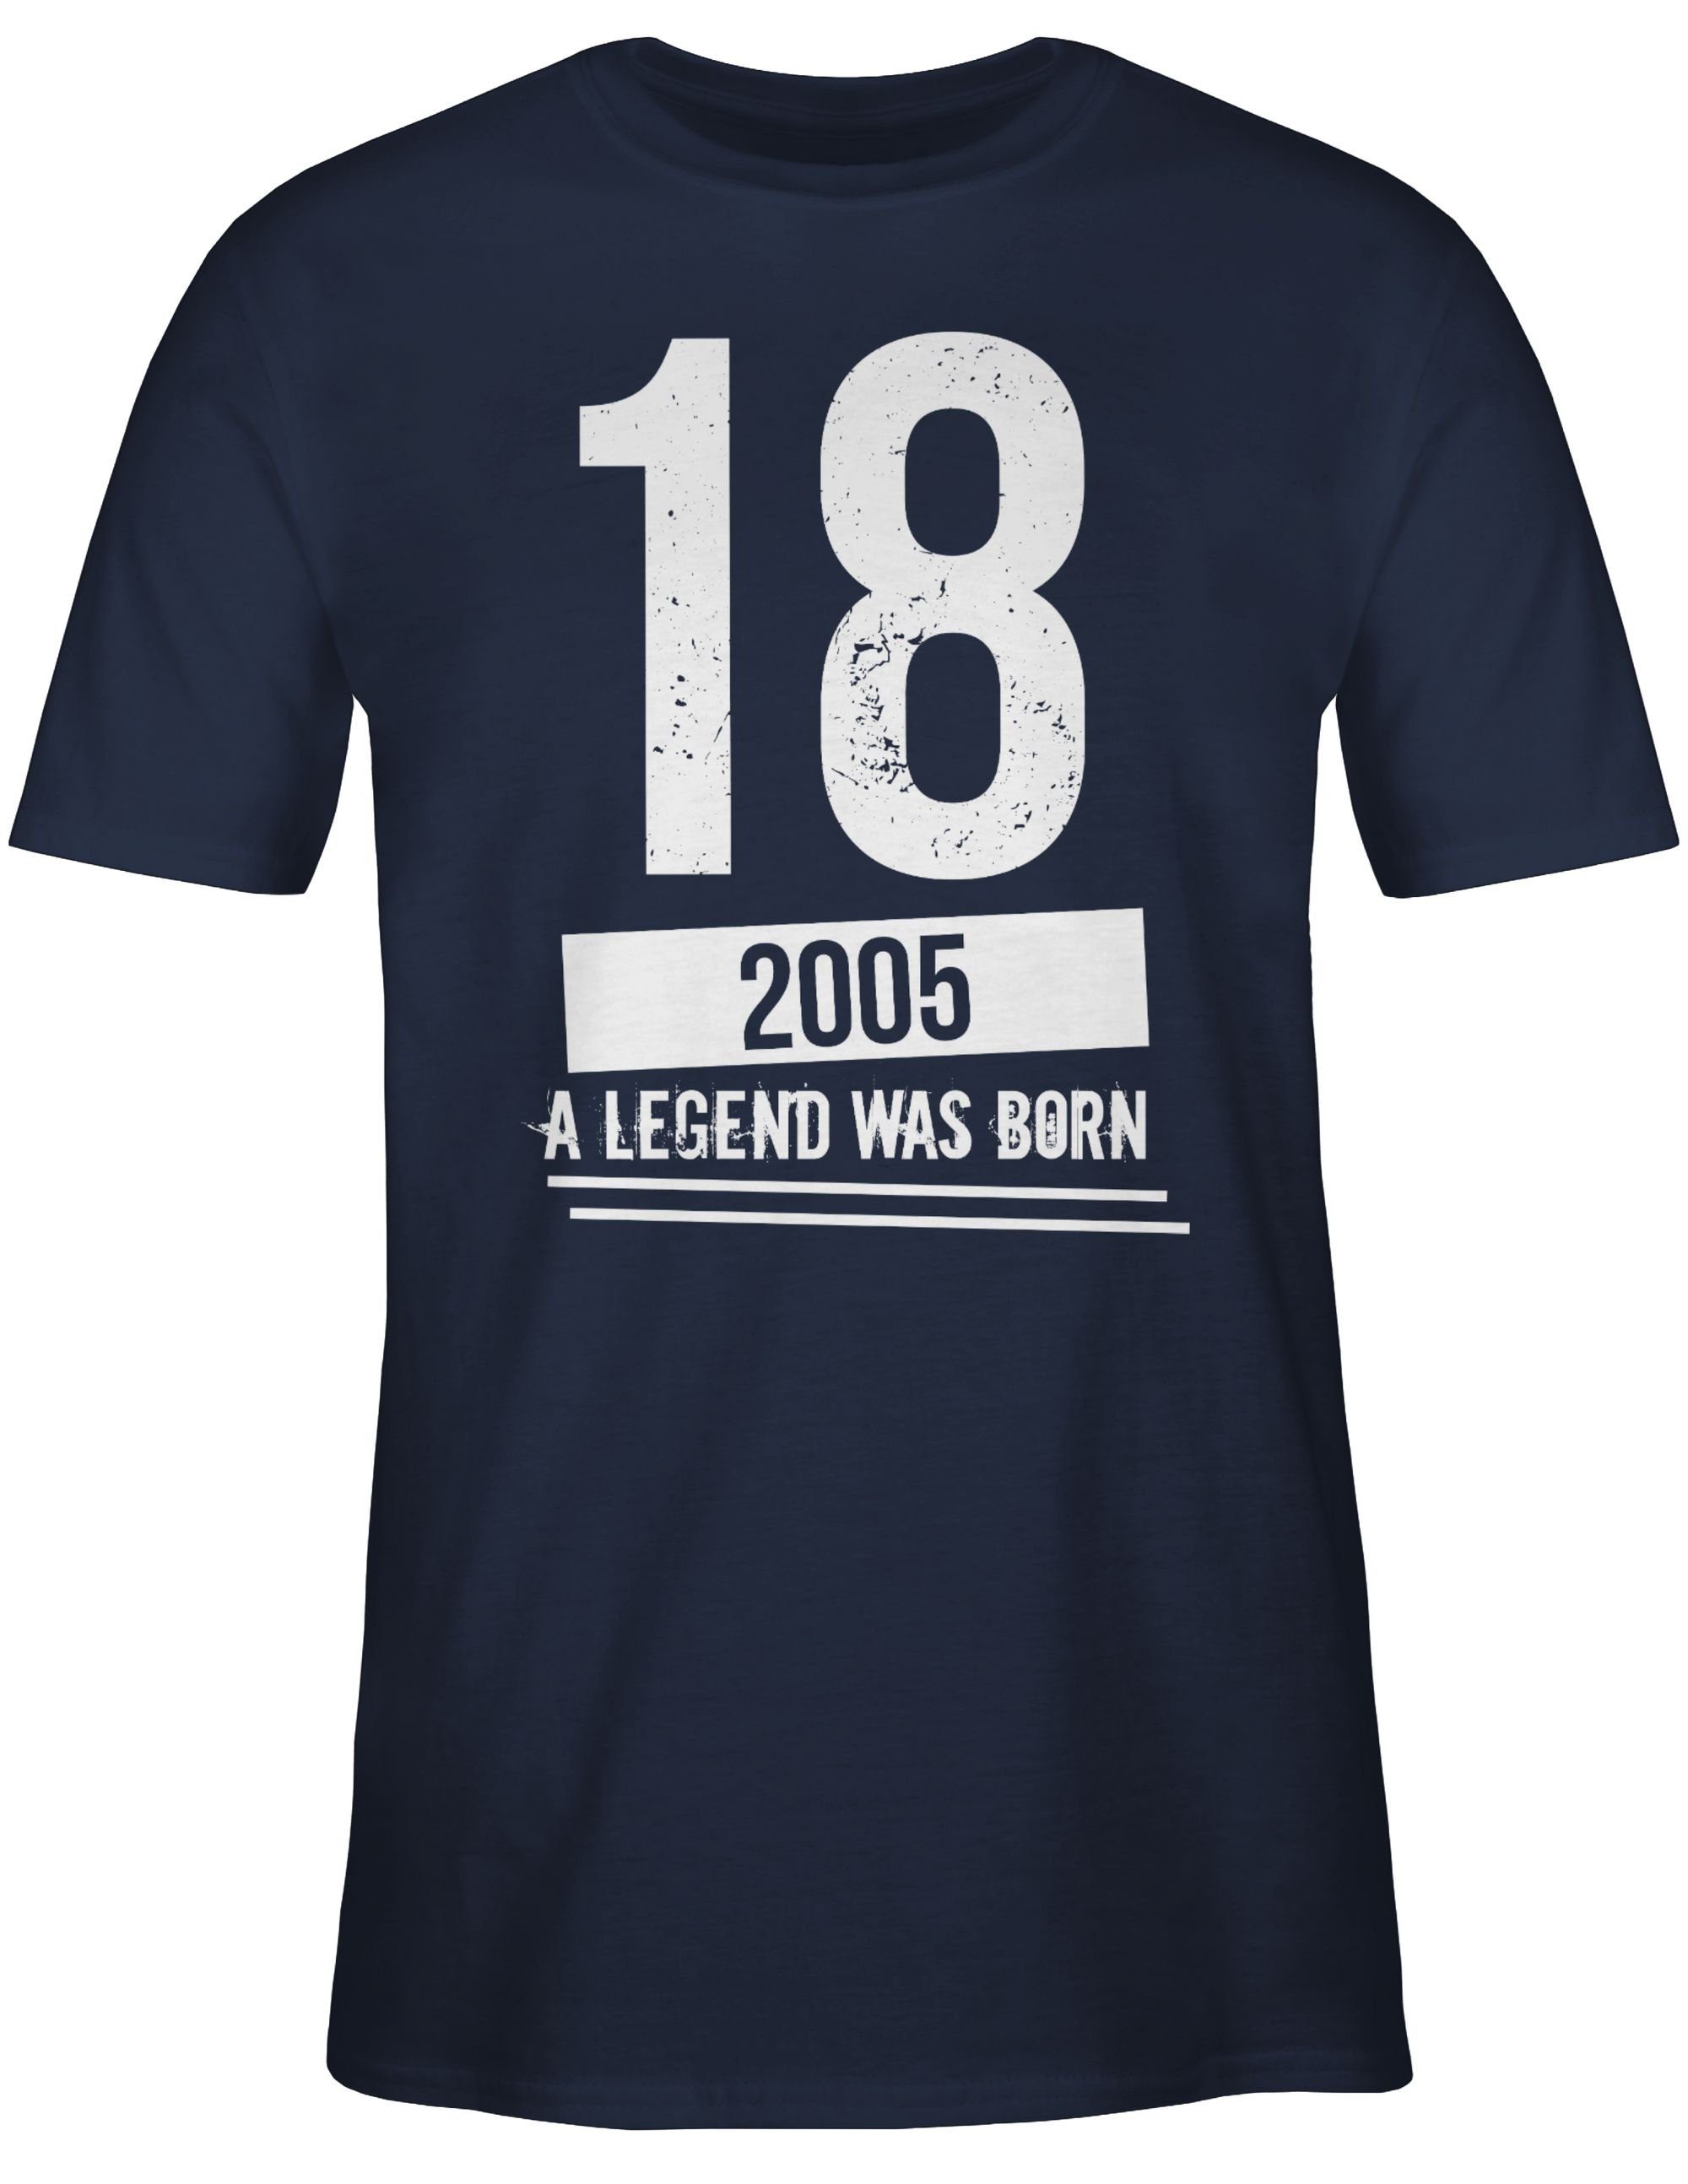 02 T-Shirt Geburtstag 2005 18. Geburtstag Navy Blau Shirtracer Achtzehnter